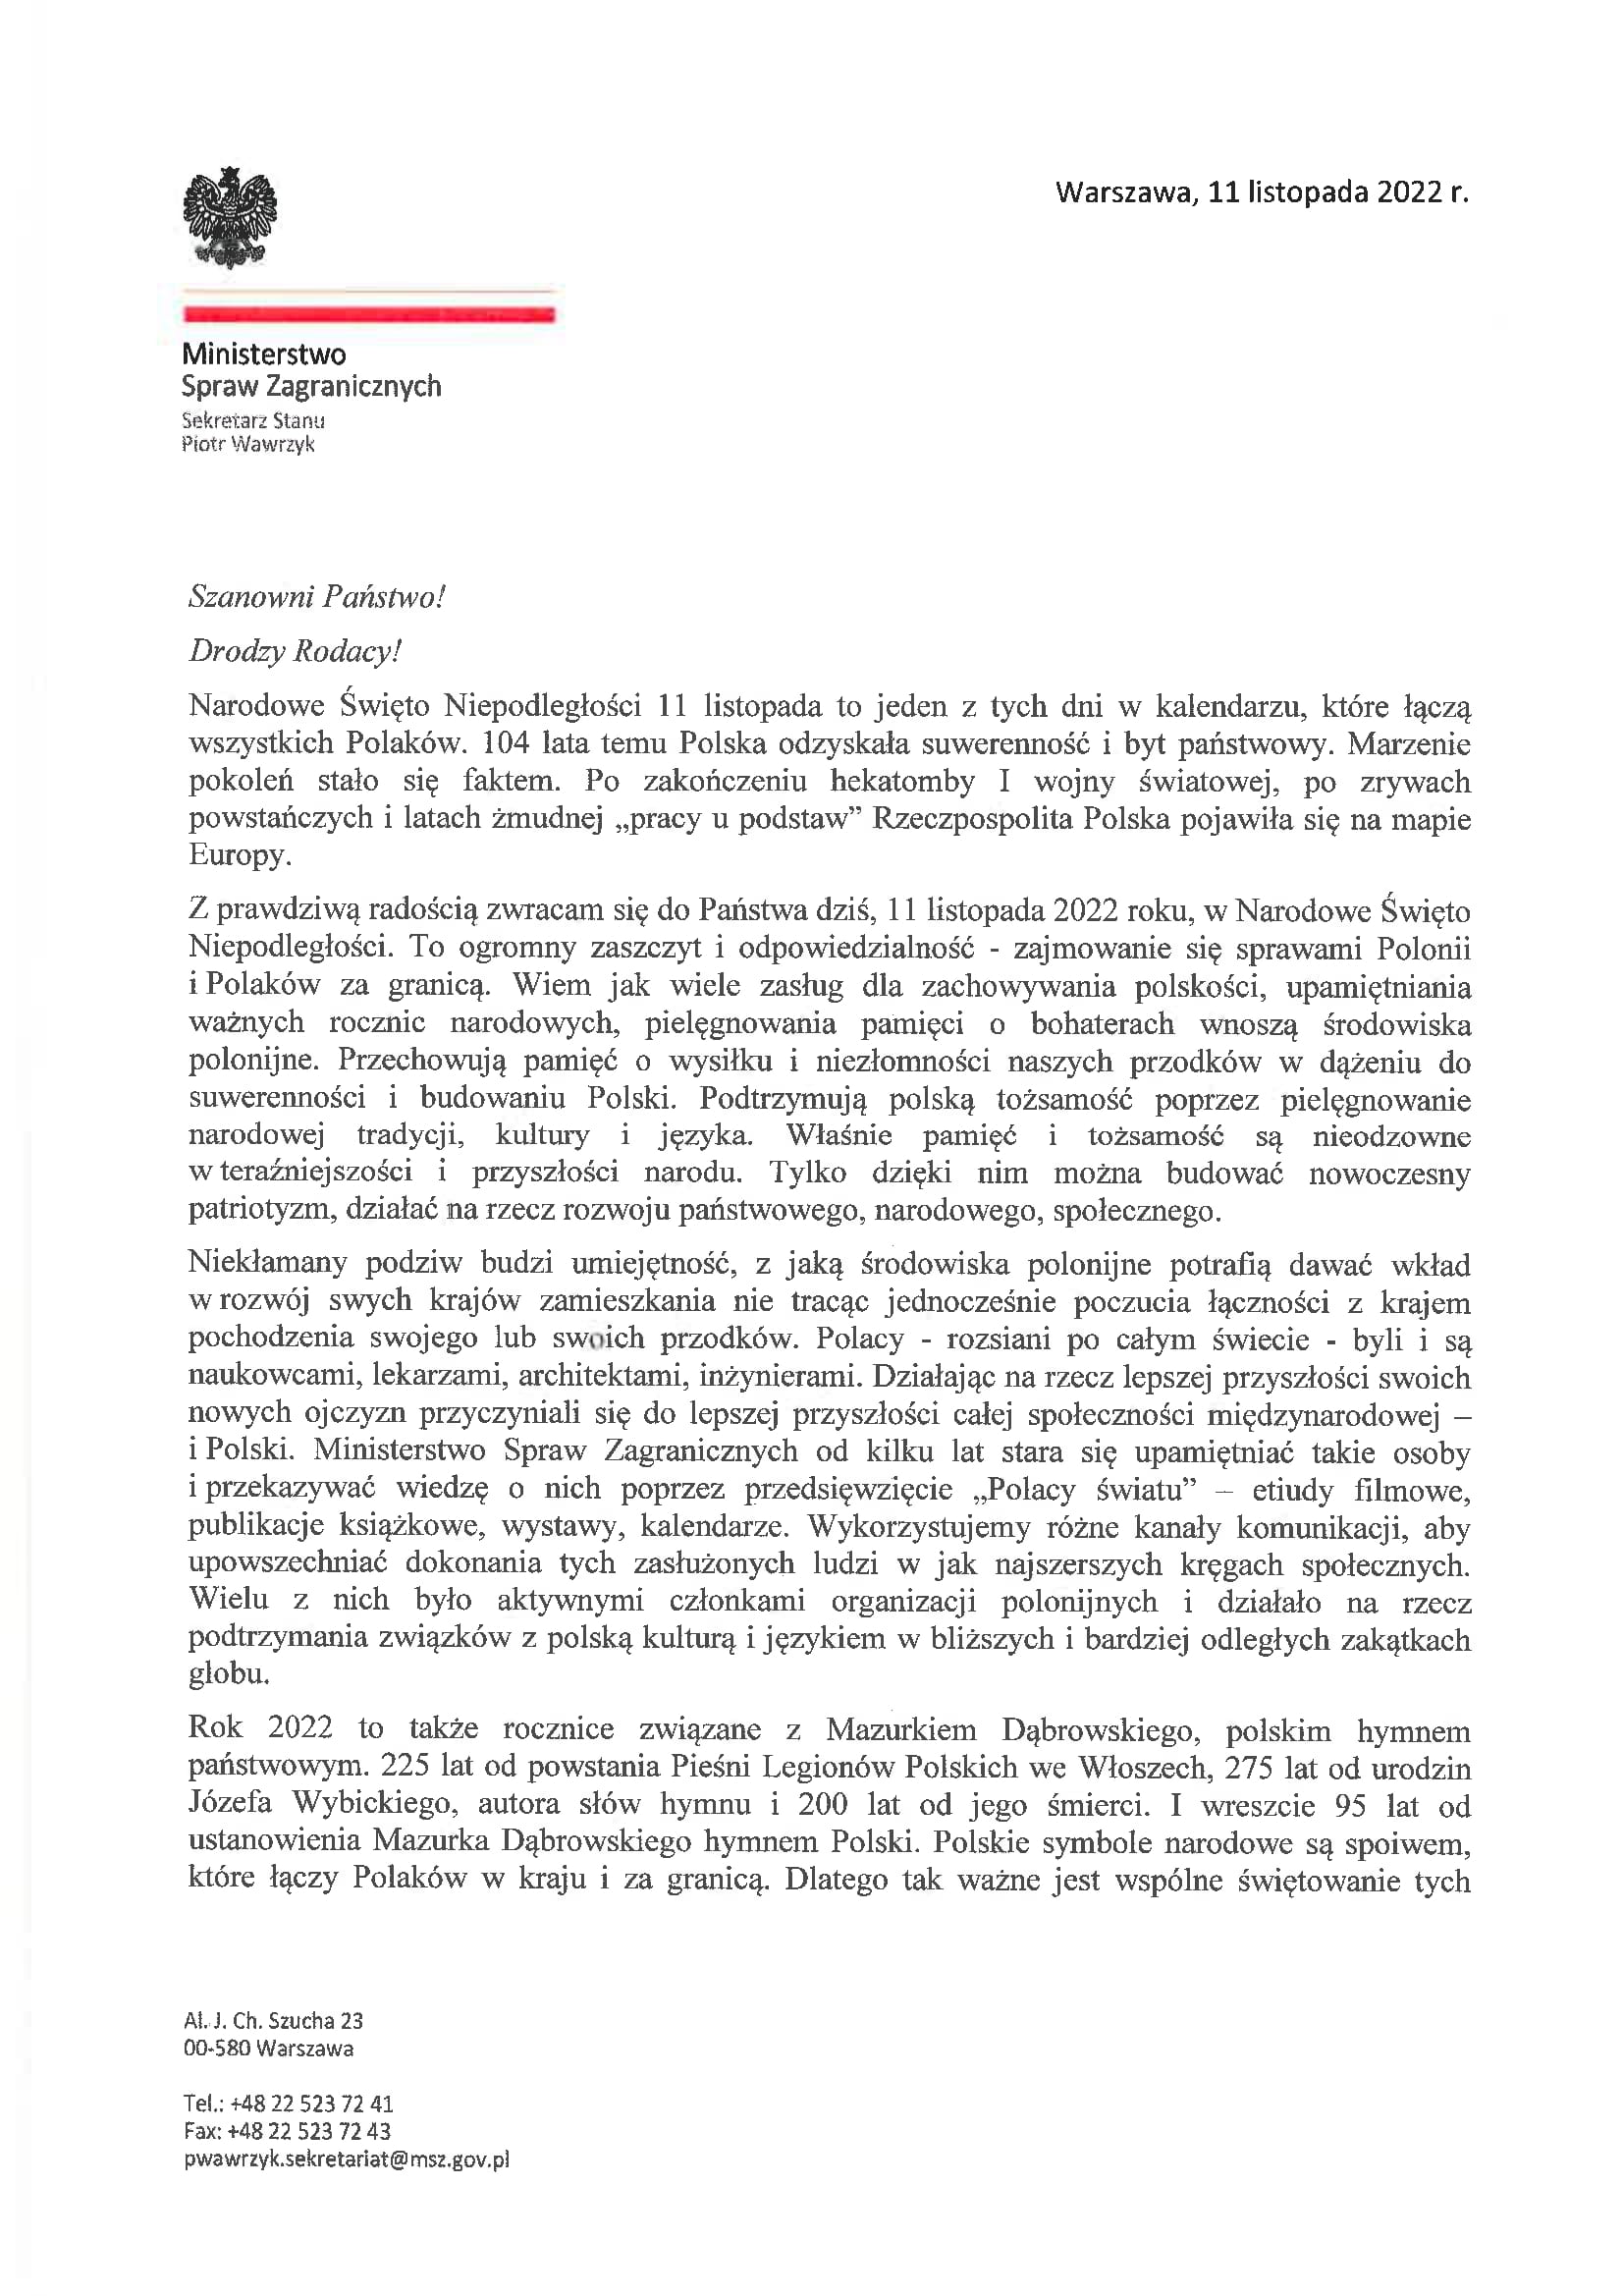 Lettera del Ministro Piotr Wawrzyk ai polacchi all’estero nel giorno della Festa dell’Indipendenza